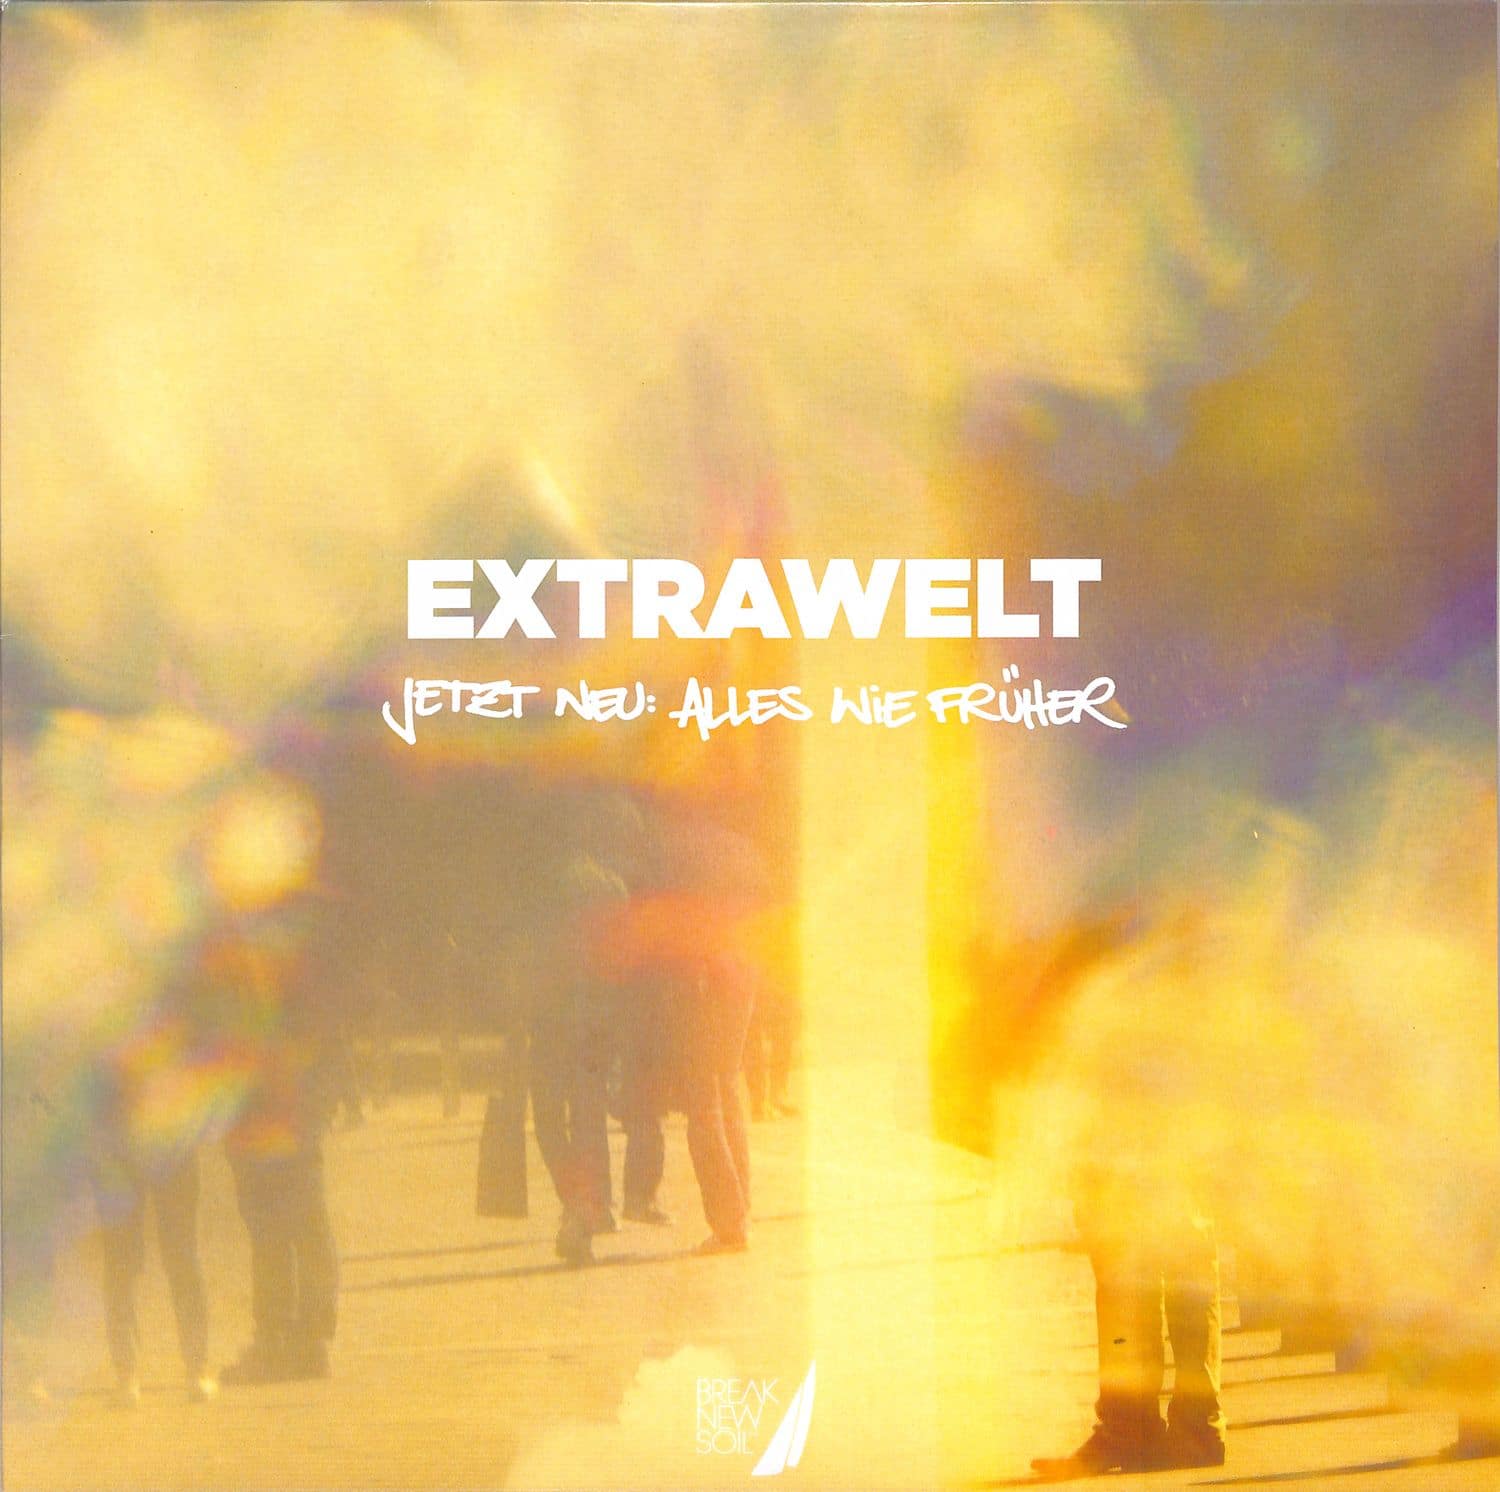 Extrawelt - JETZT NEU: ALLES WIE FRUEHER